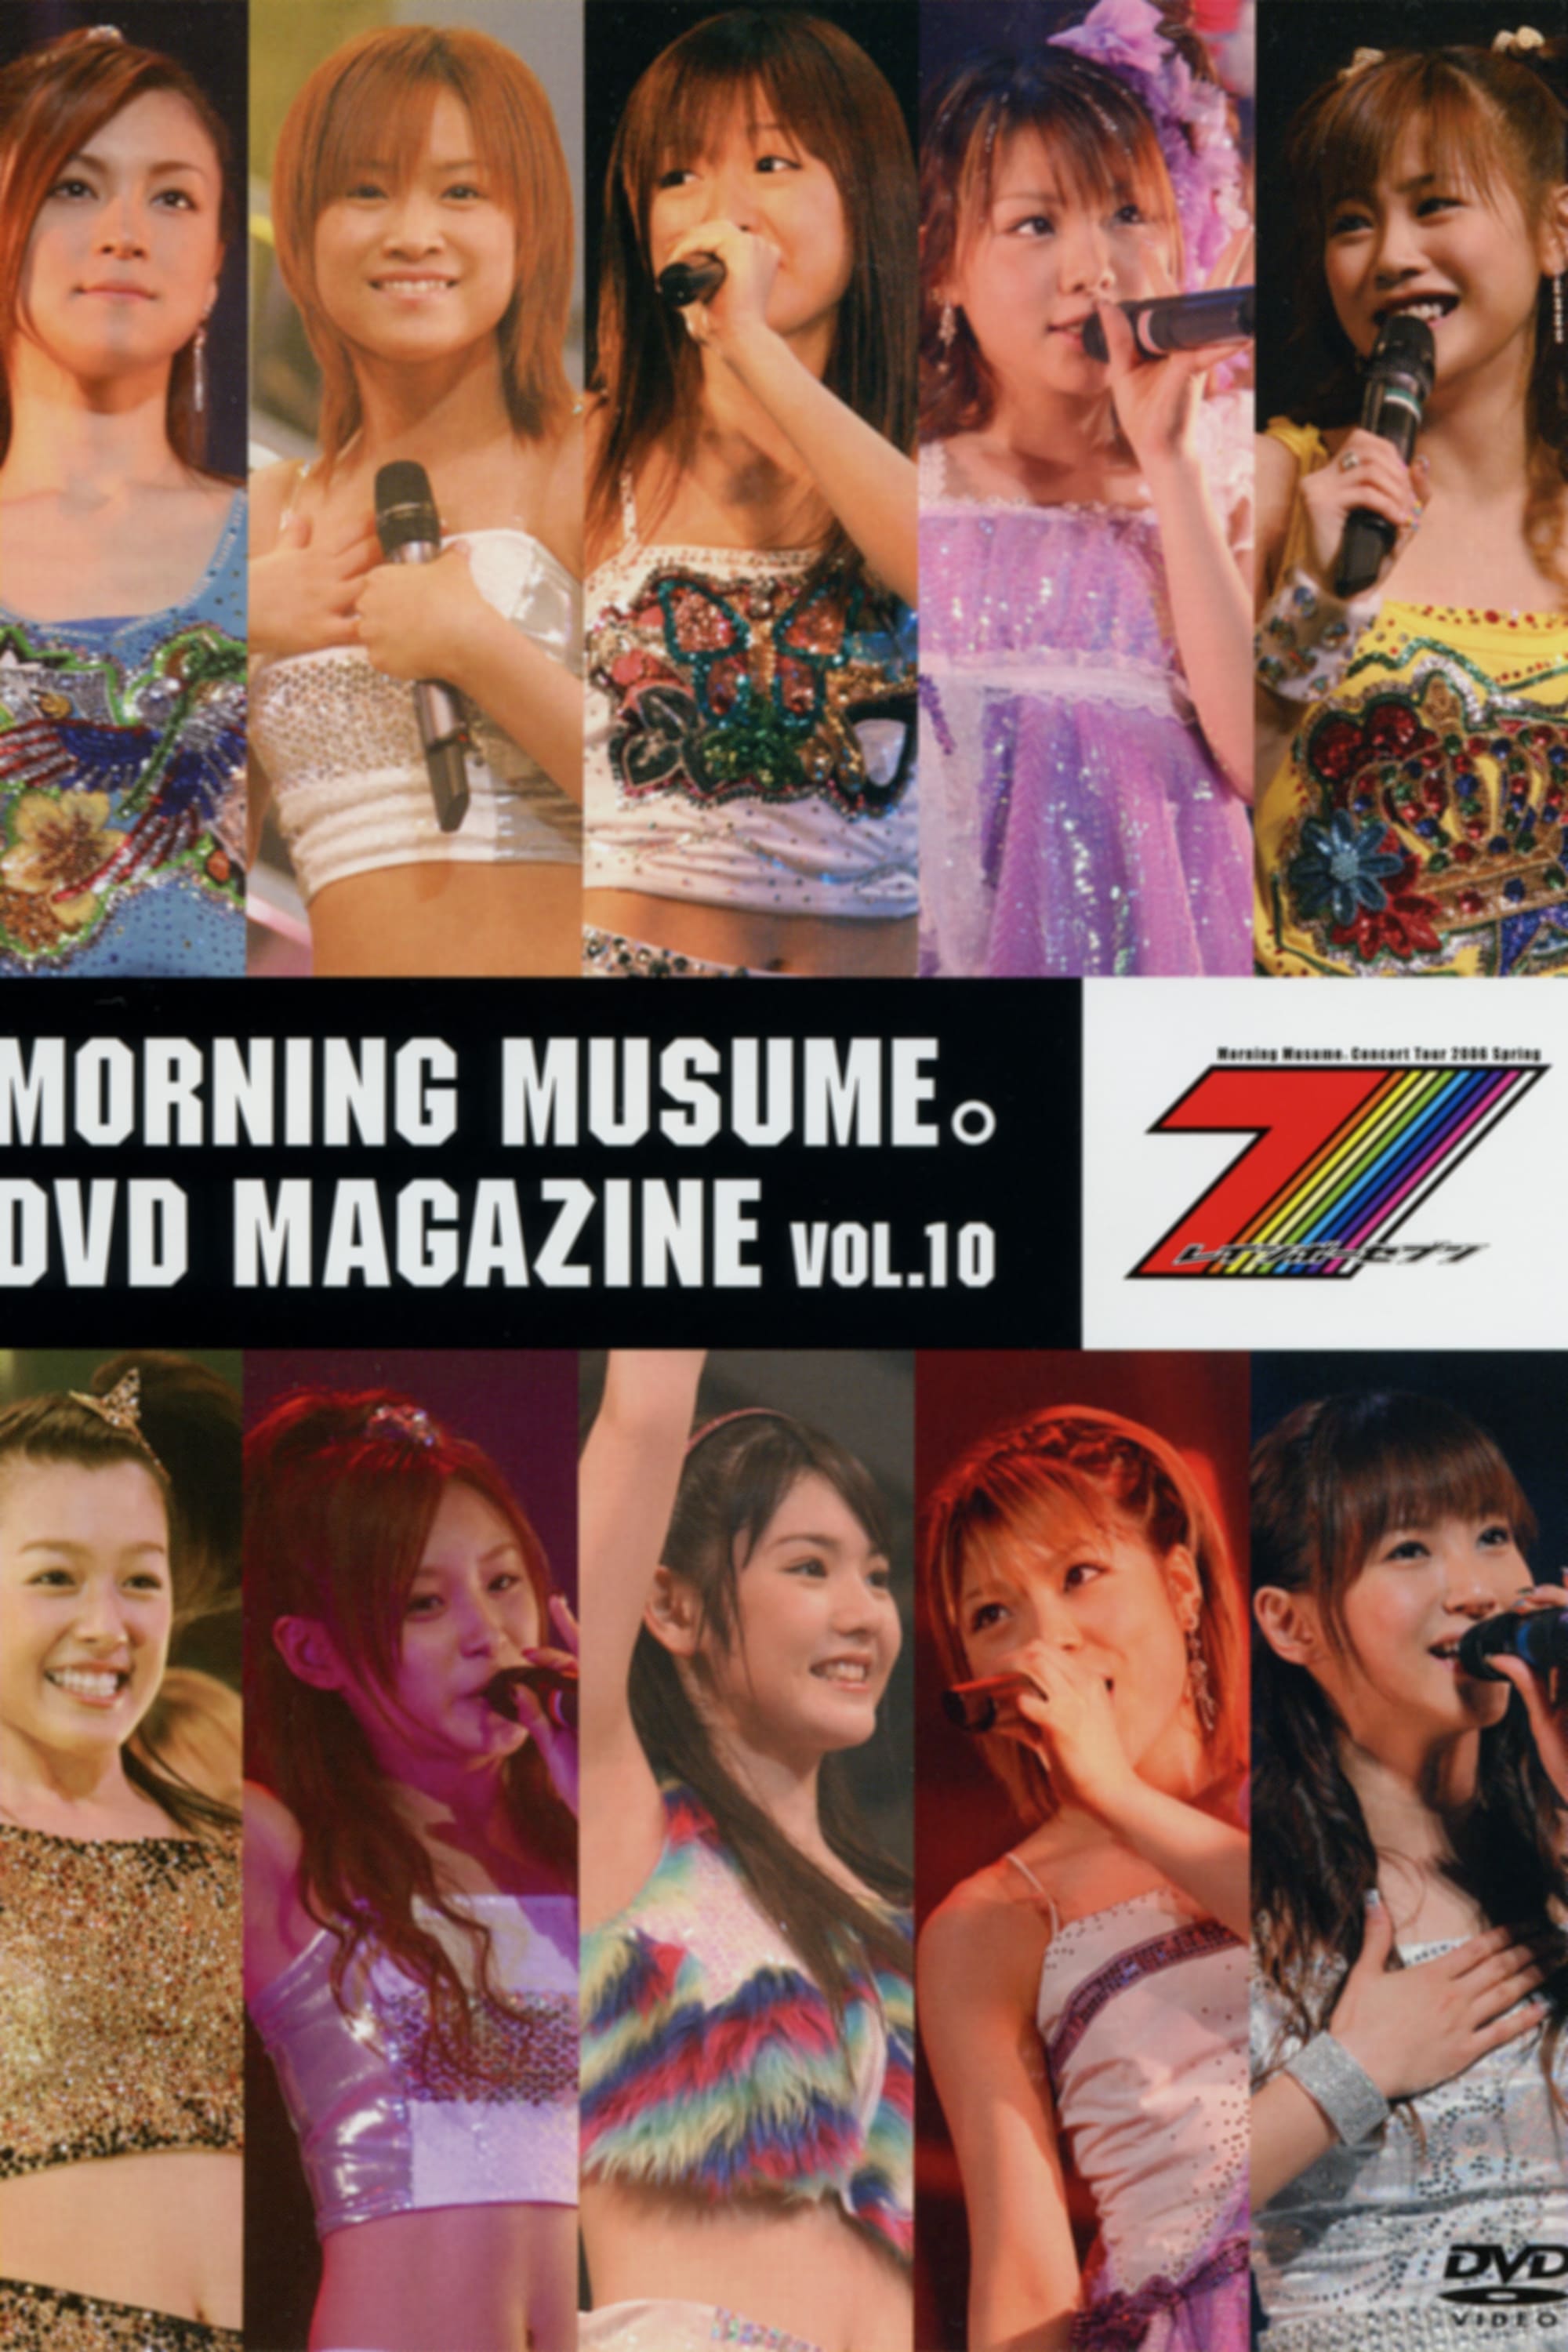 Morning Musume. DVD Magazine Vol.10